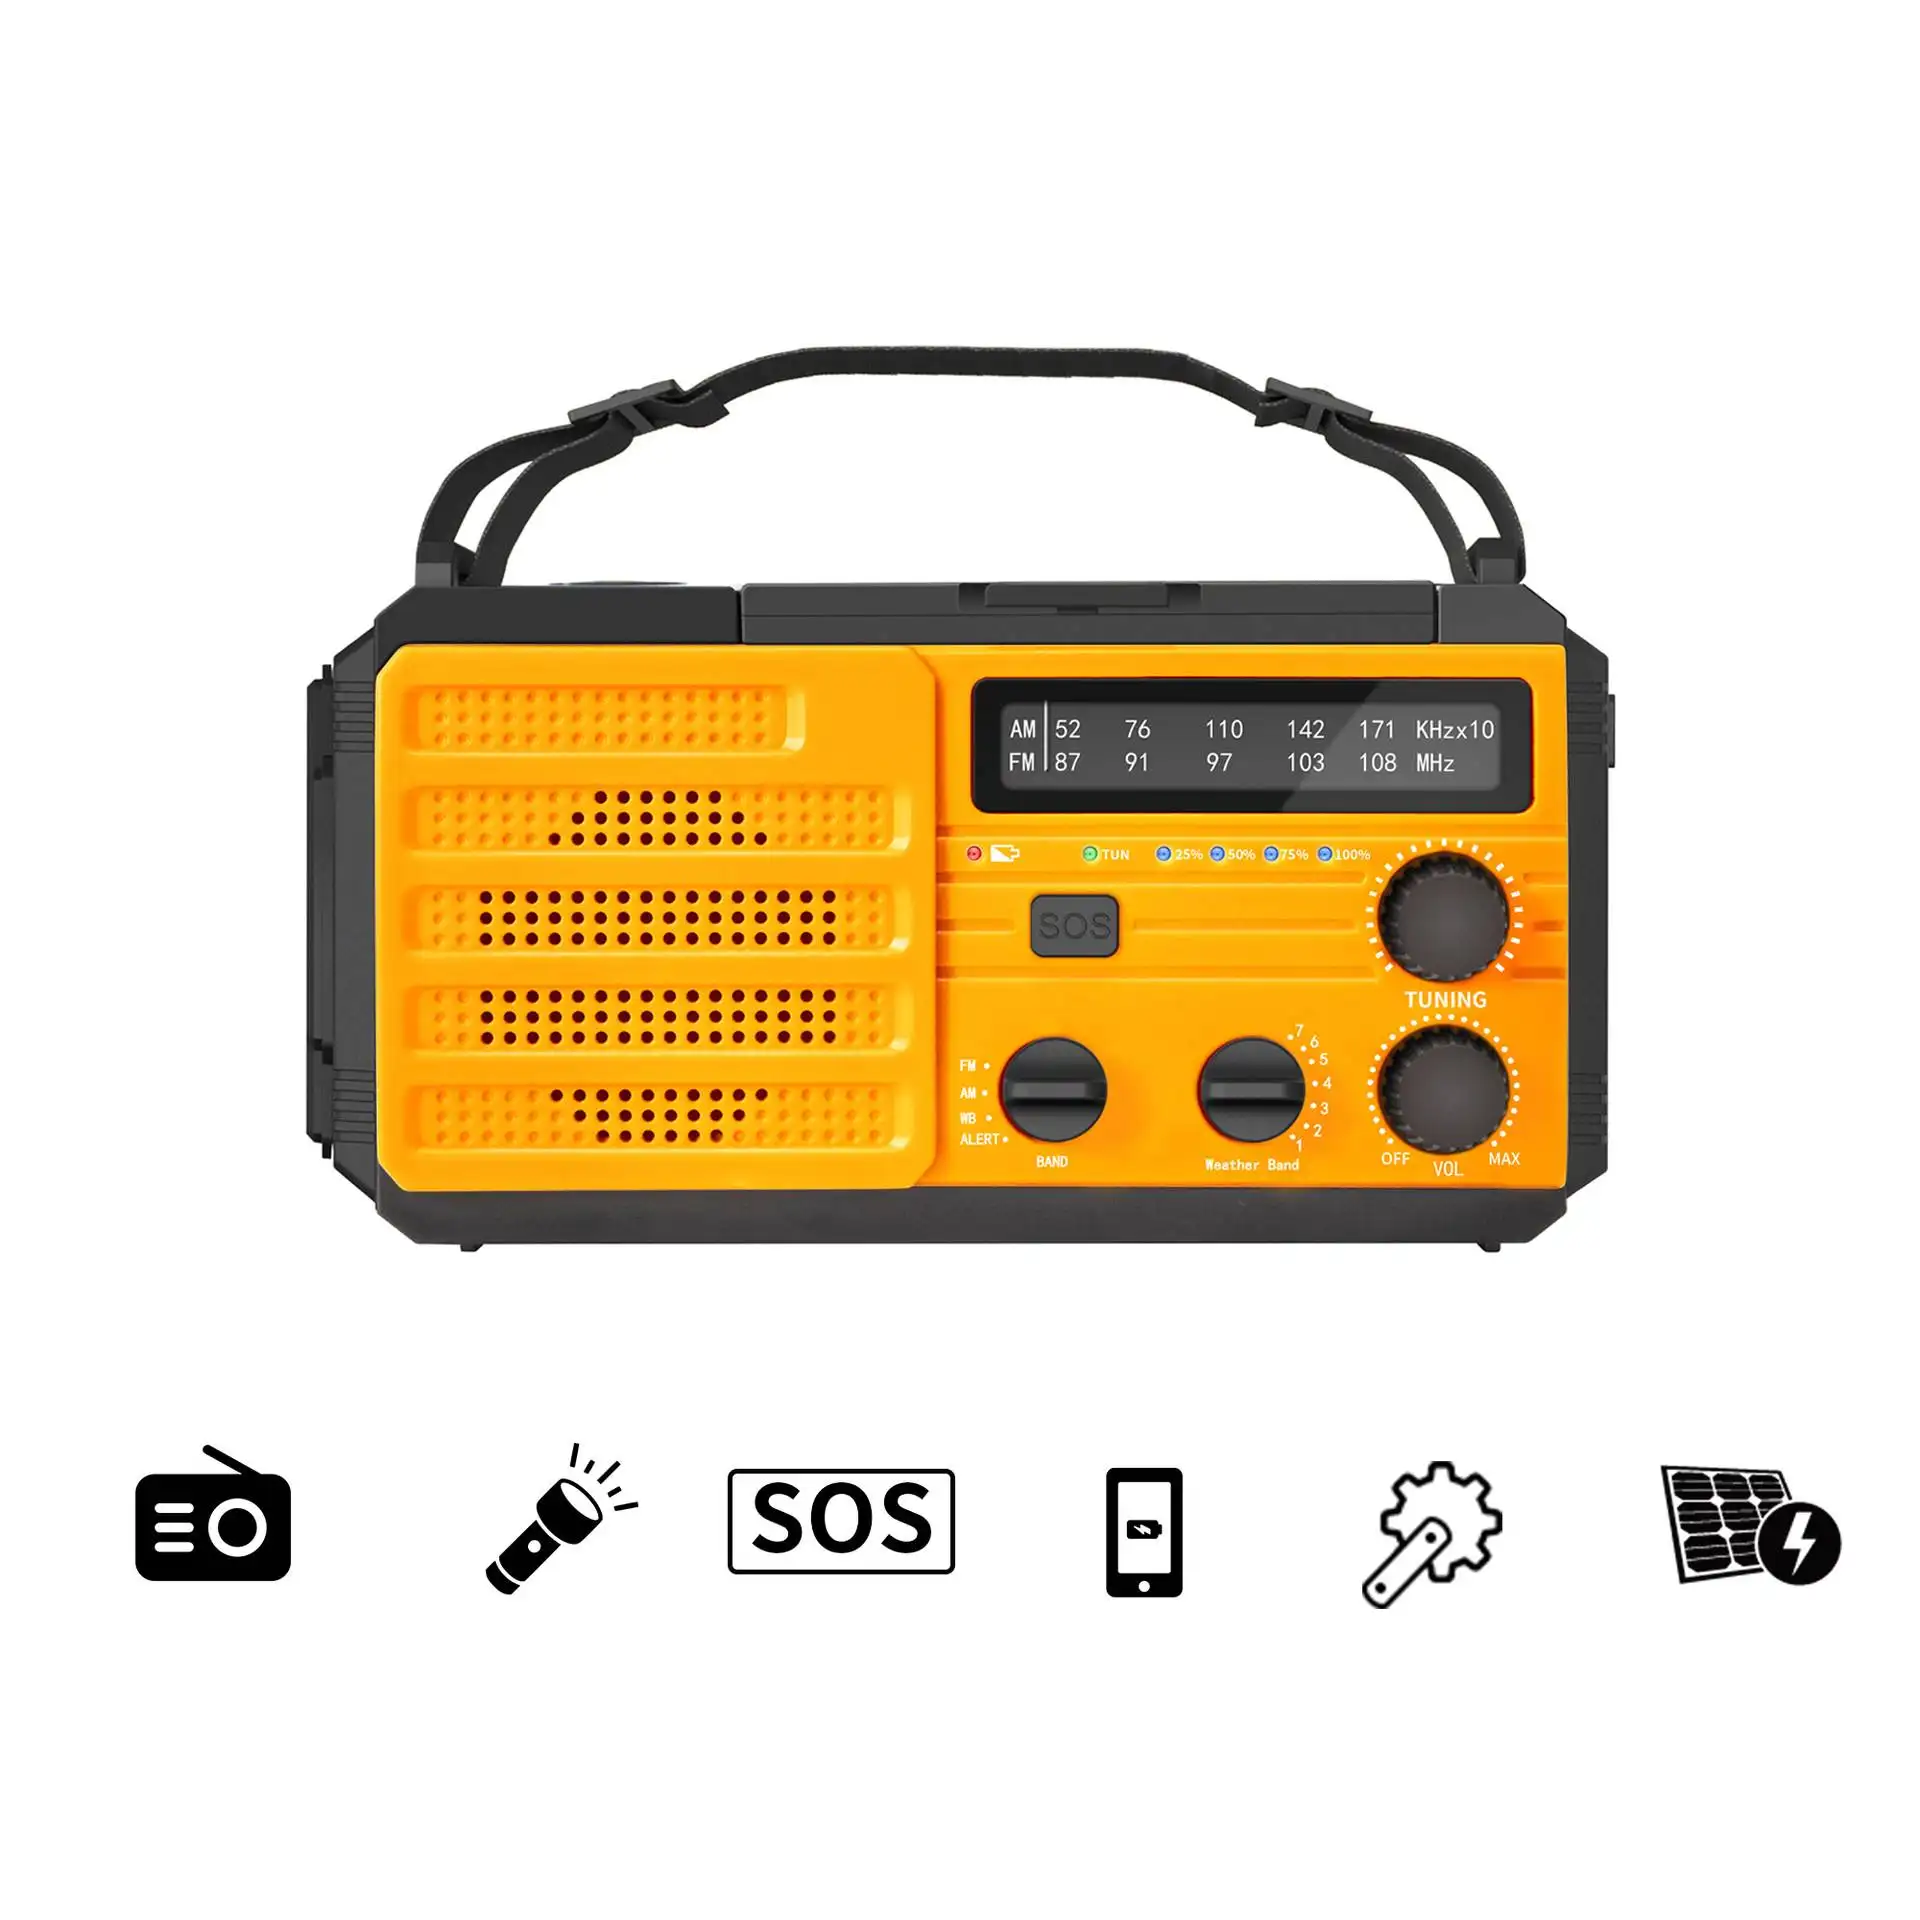 Radio darurat portabel, Crank Am/fm Radio isi ulang dengan Power Bank 8000mah dan Senter Led